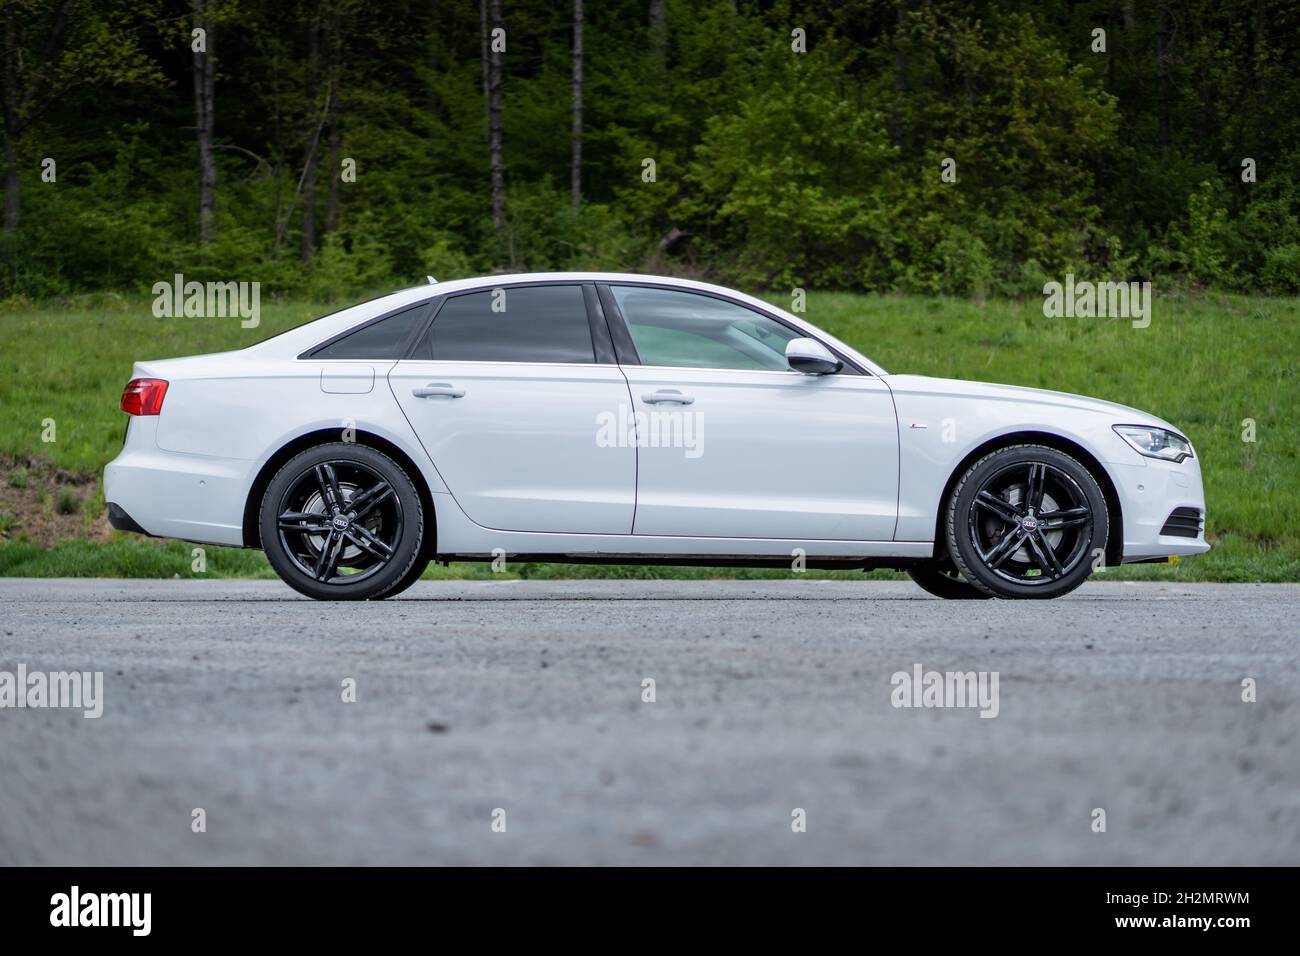 CLUJ, RUMÄNIEN - 15. Mai 2021: Ein rechtes Profil des Audi A6 des Jahres  2014 S-Line, weiß metallic lackiert und schwarze Felgen Stockfotografie -  Alamy